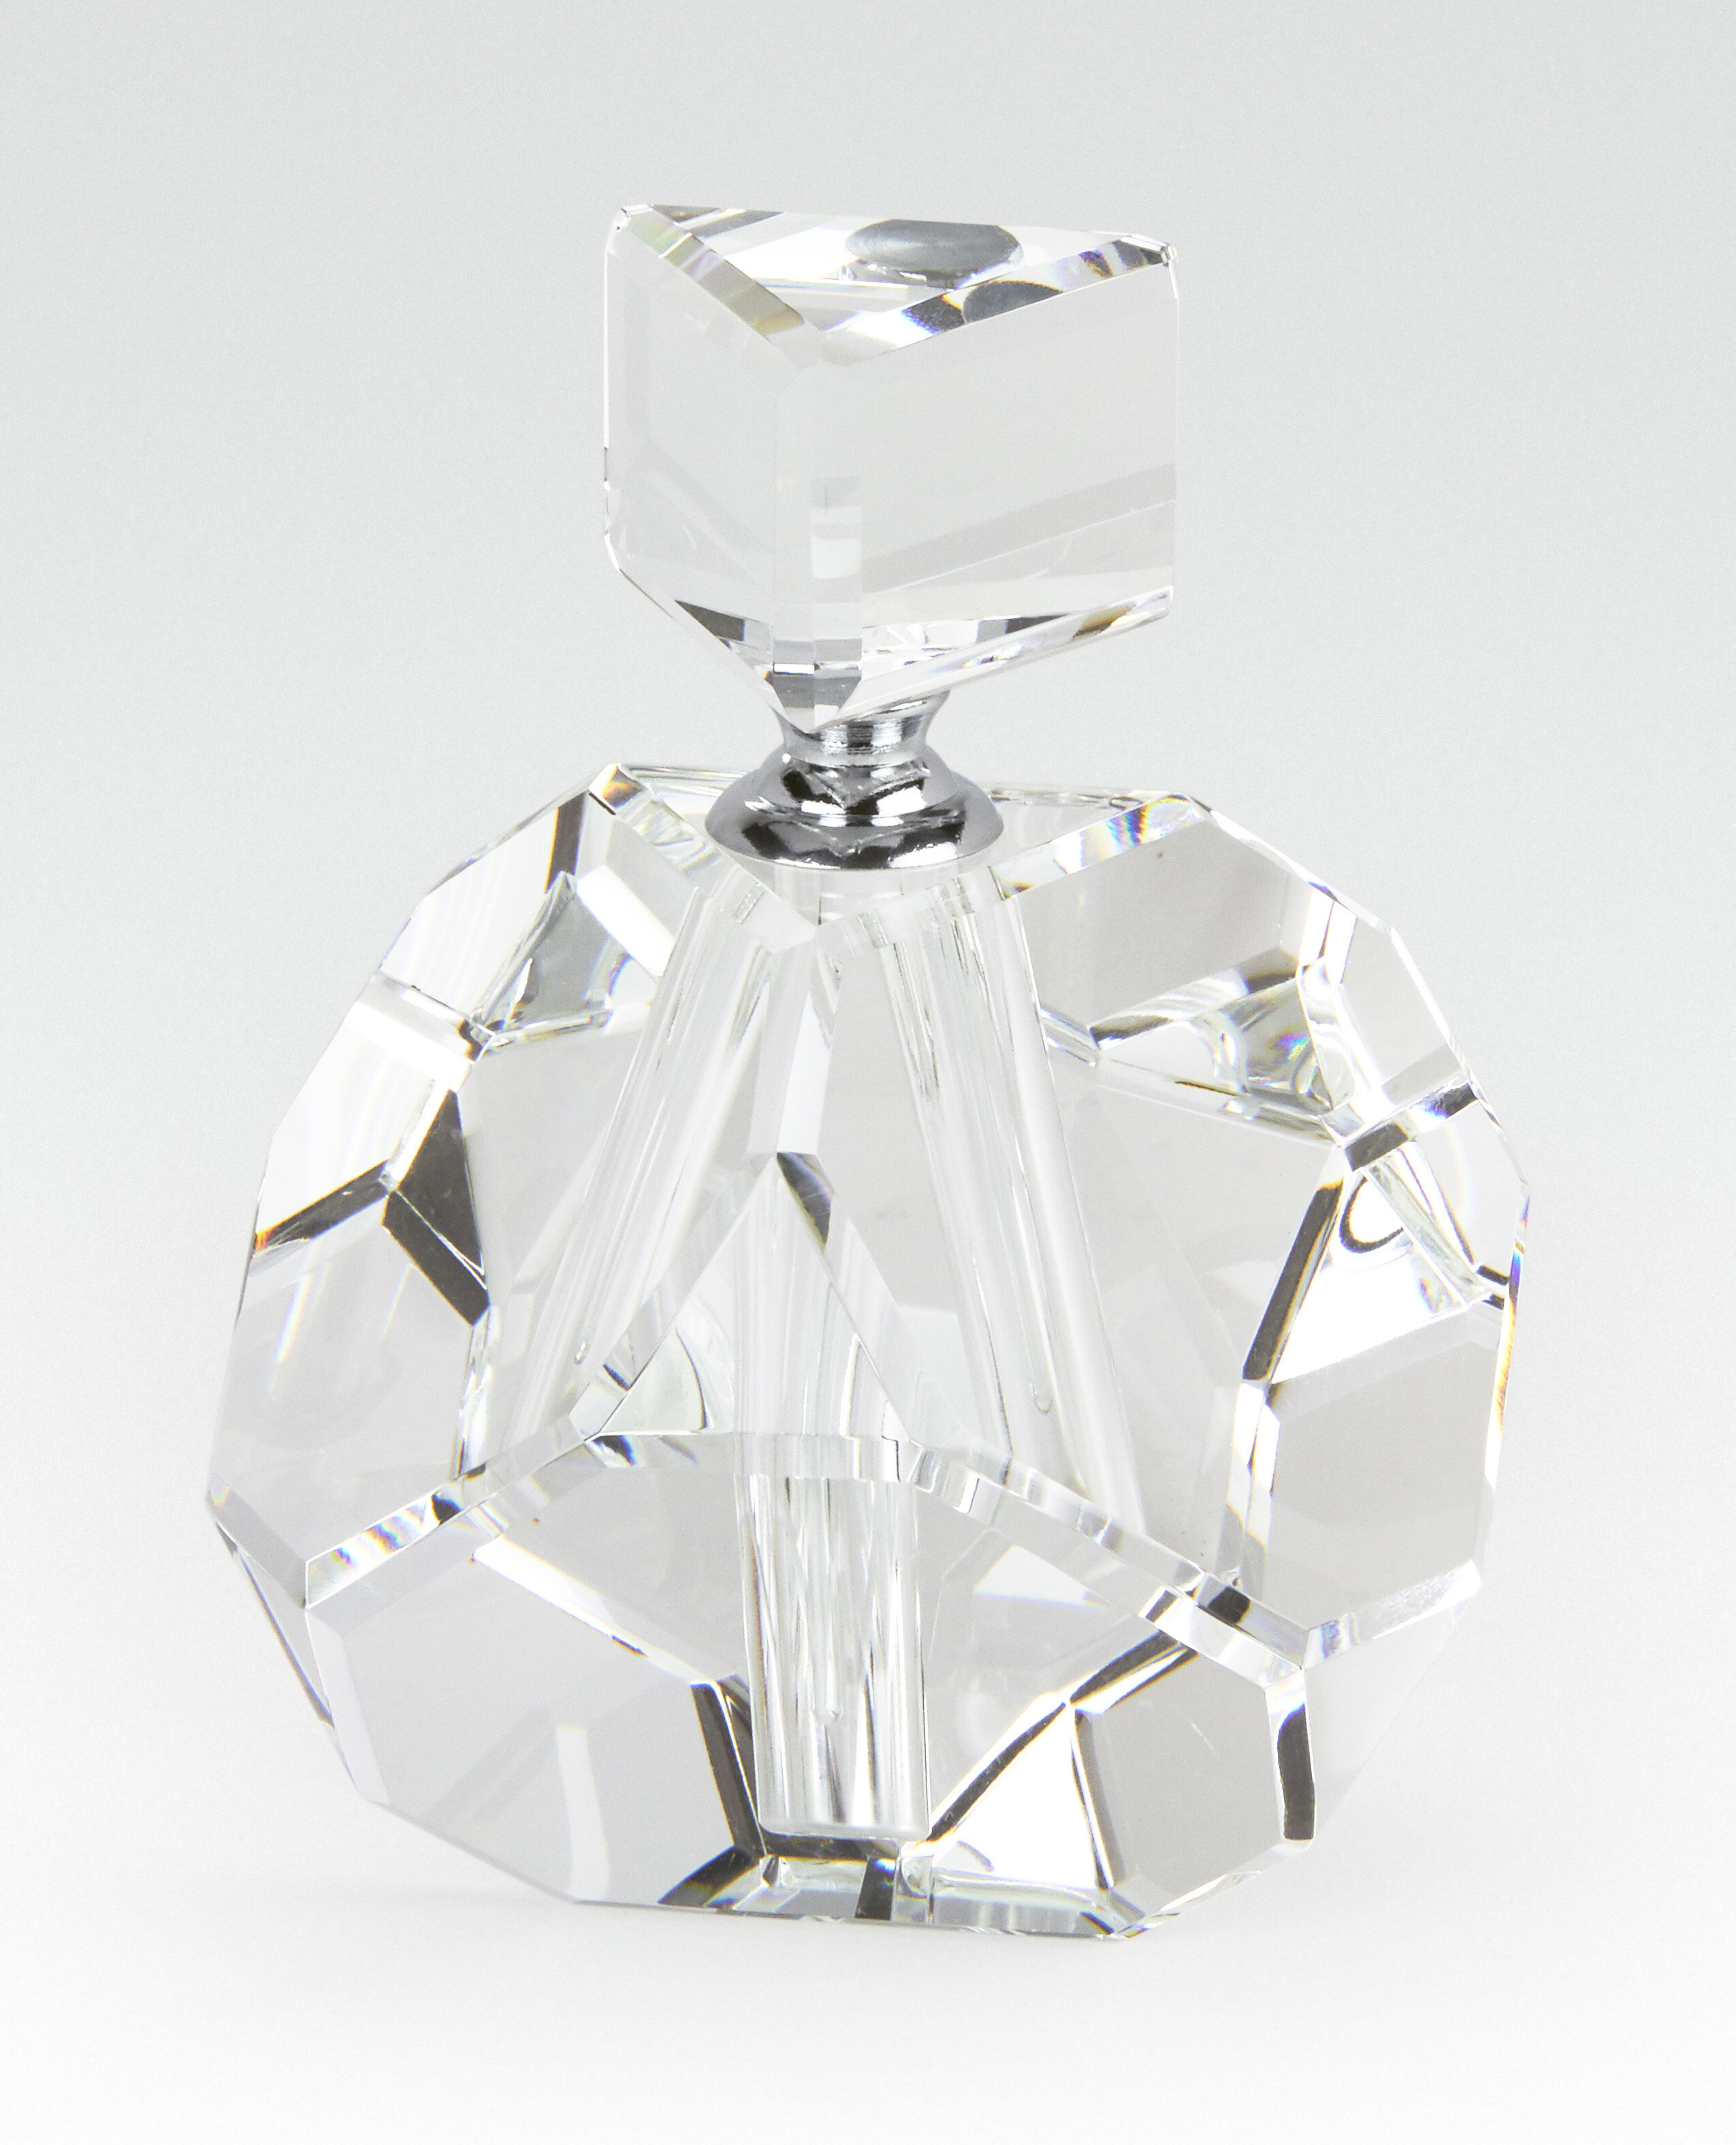 diamond crystal perfume